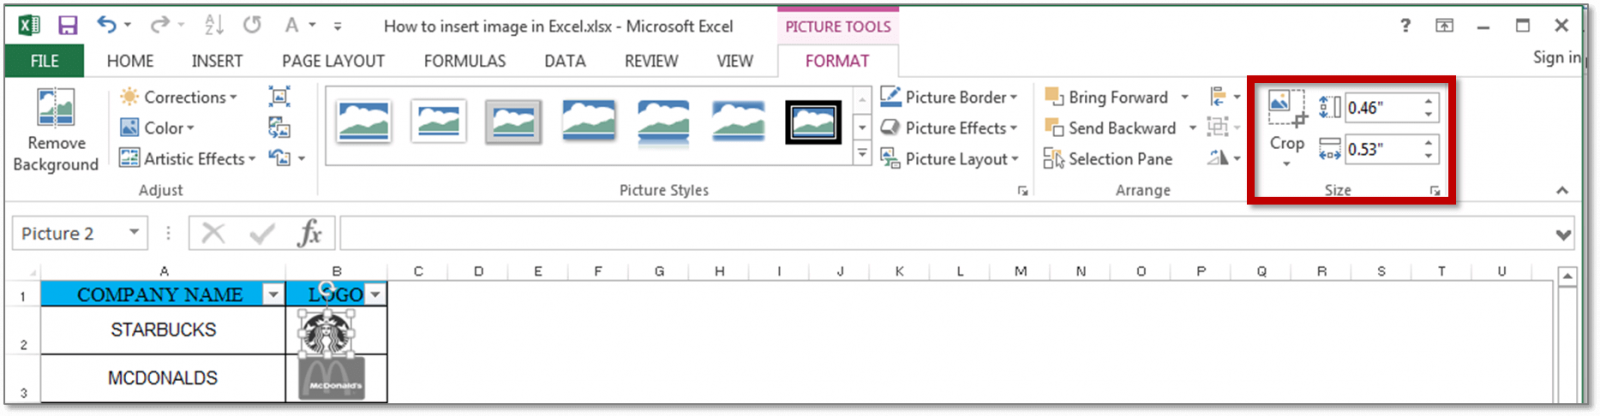 Hướng dẫn chèn một hình ảnh vào một ô trong Excel